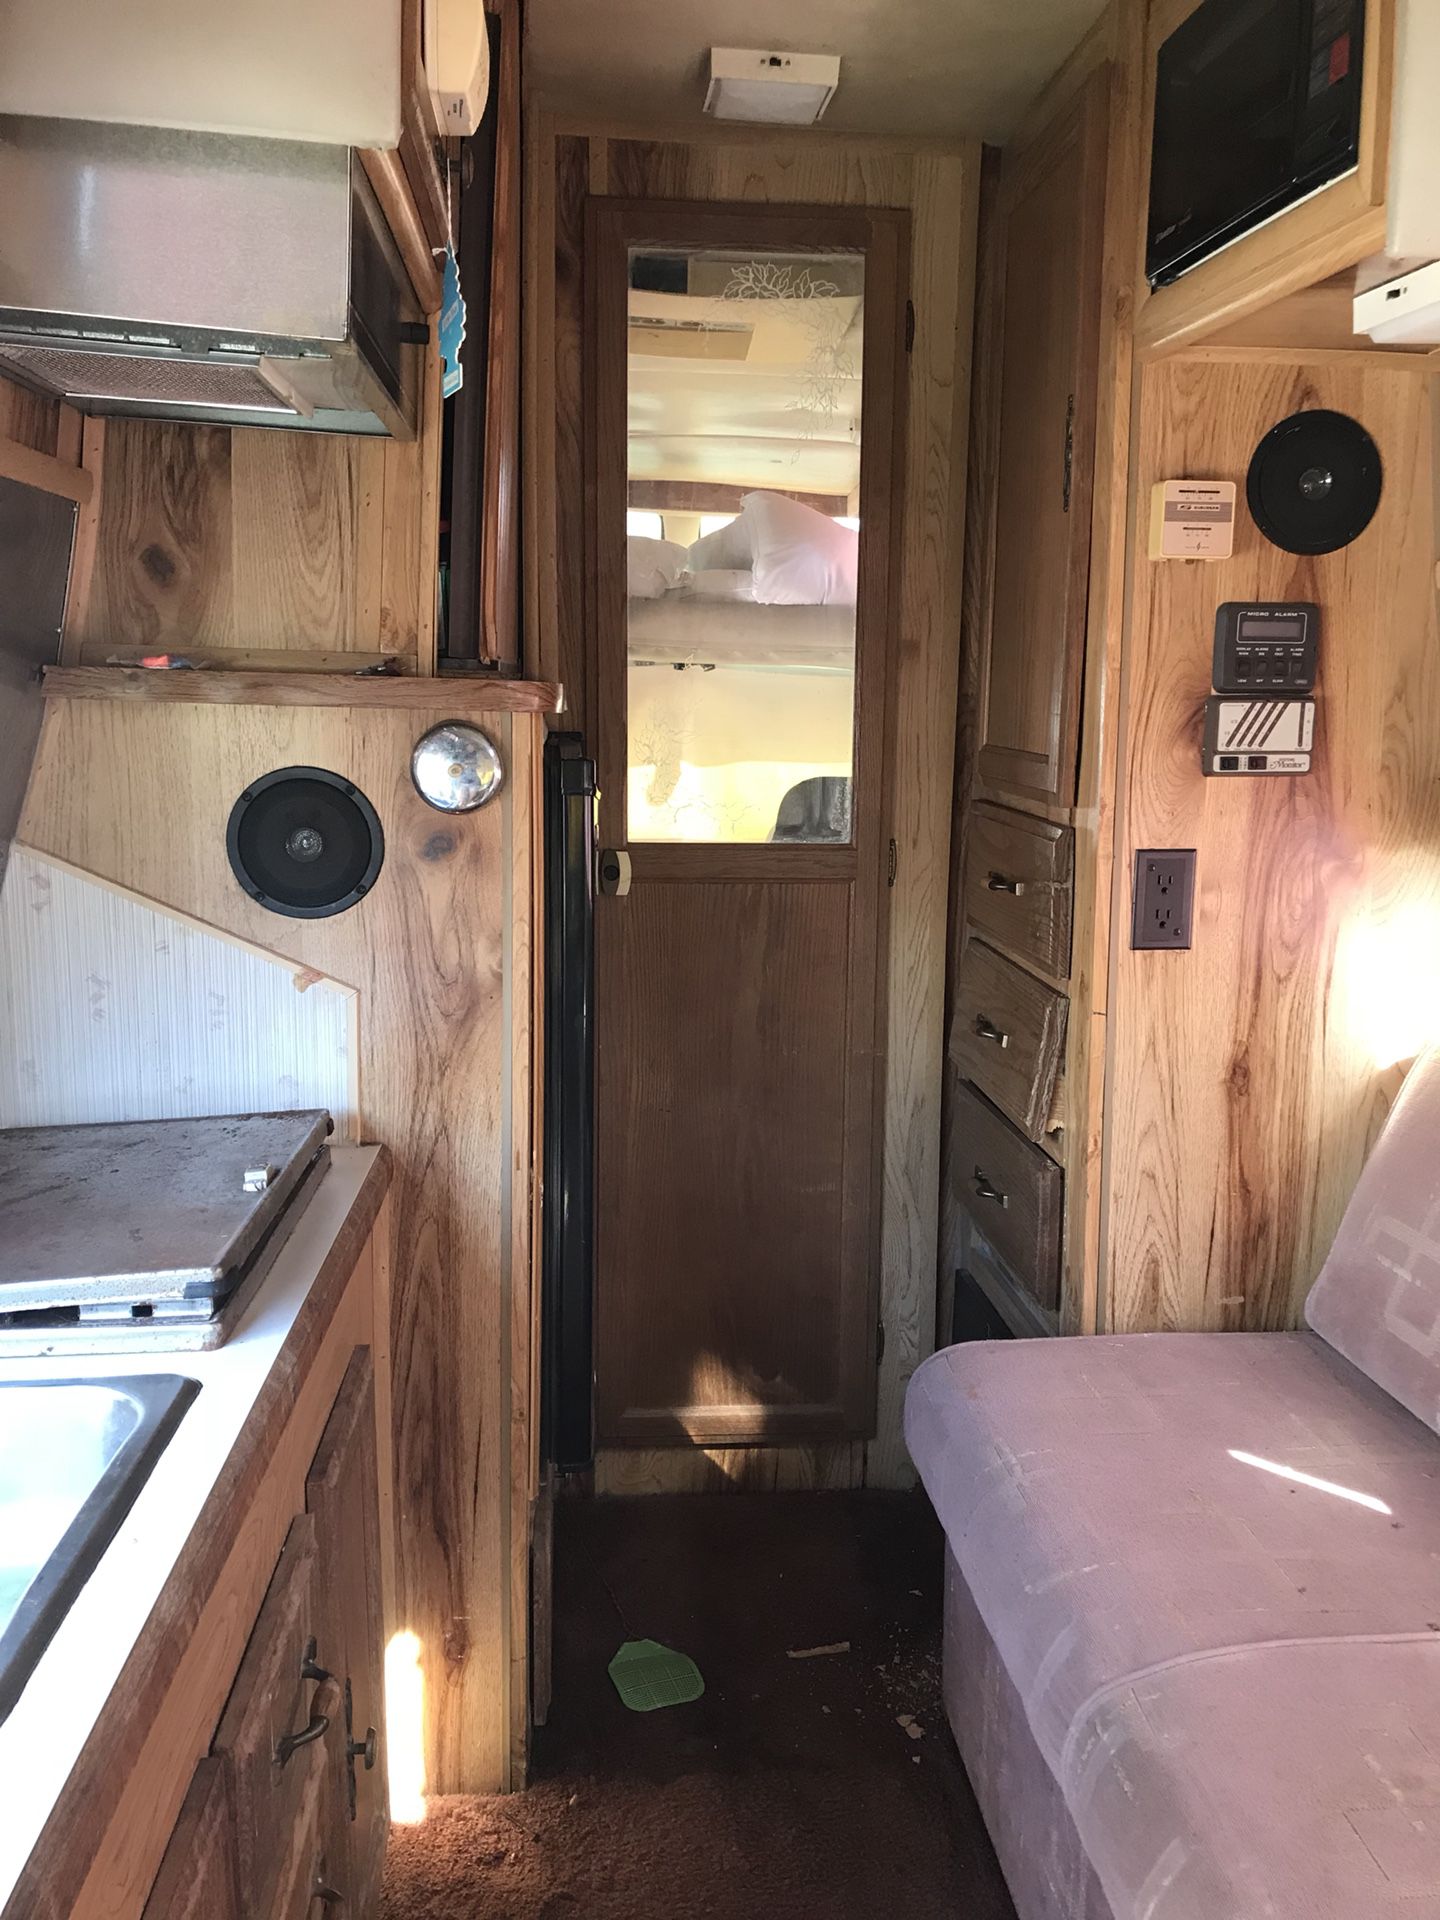 Class B camper Van